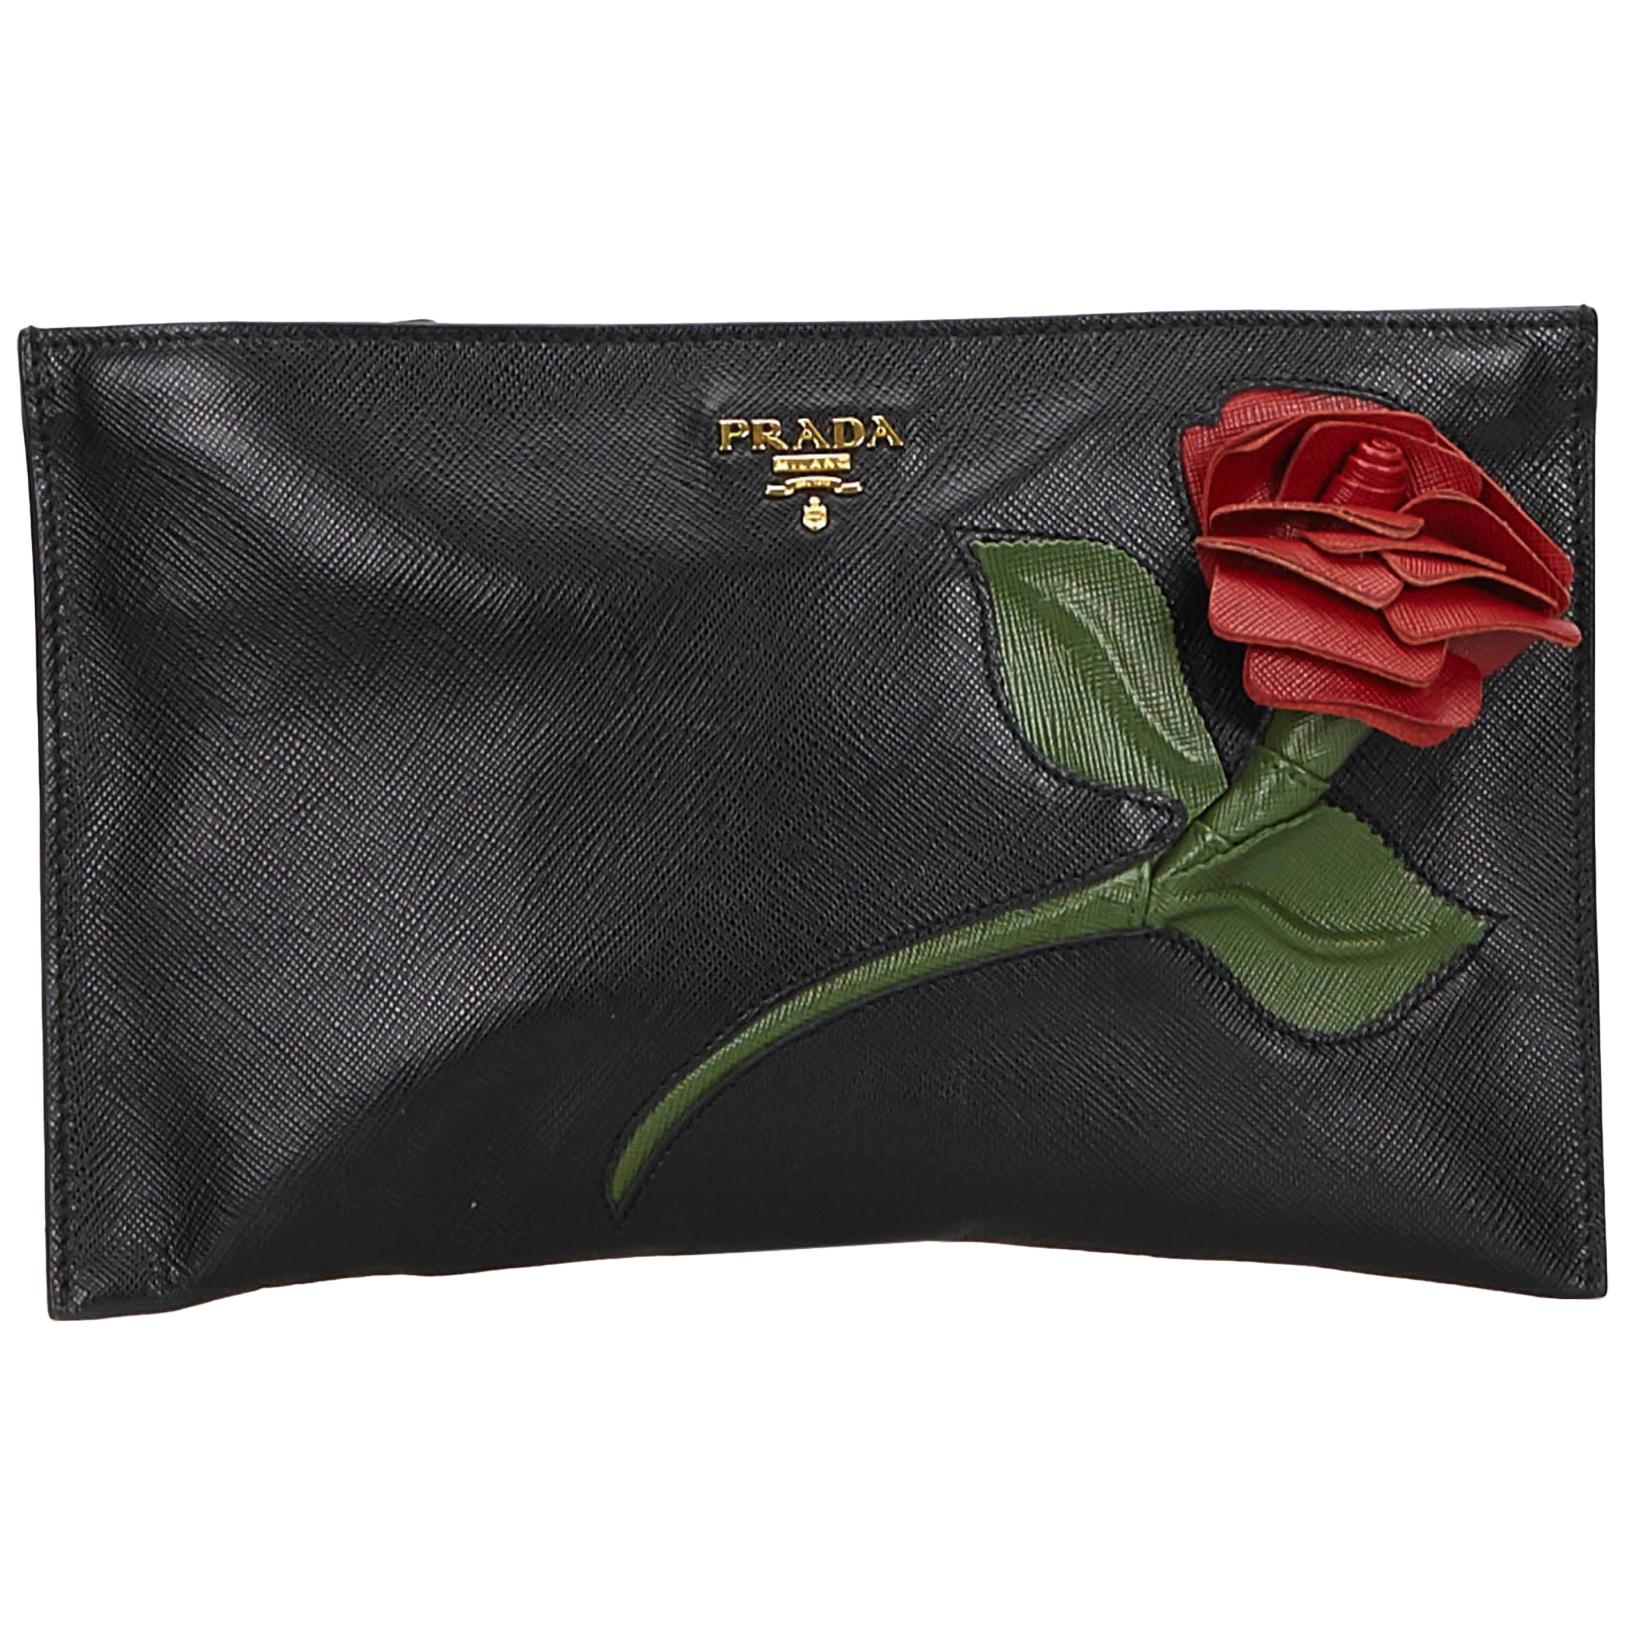 Prada Saffiano Rose Applique Leather Clutch Bag